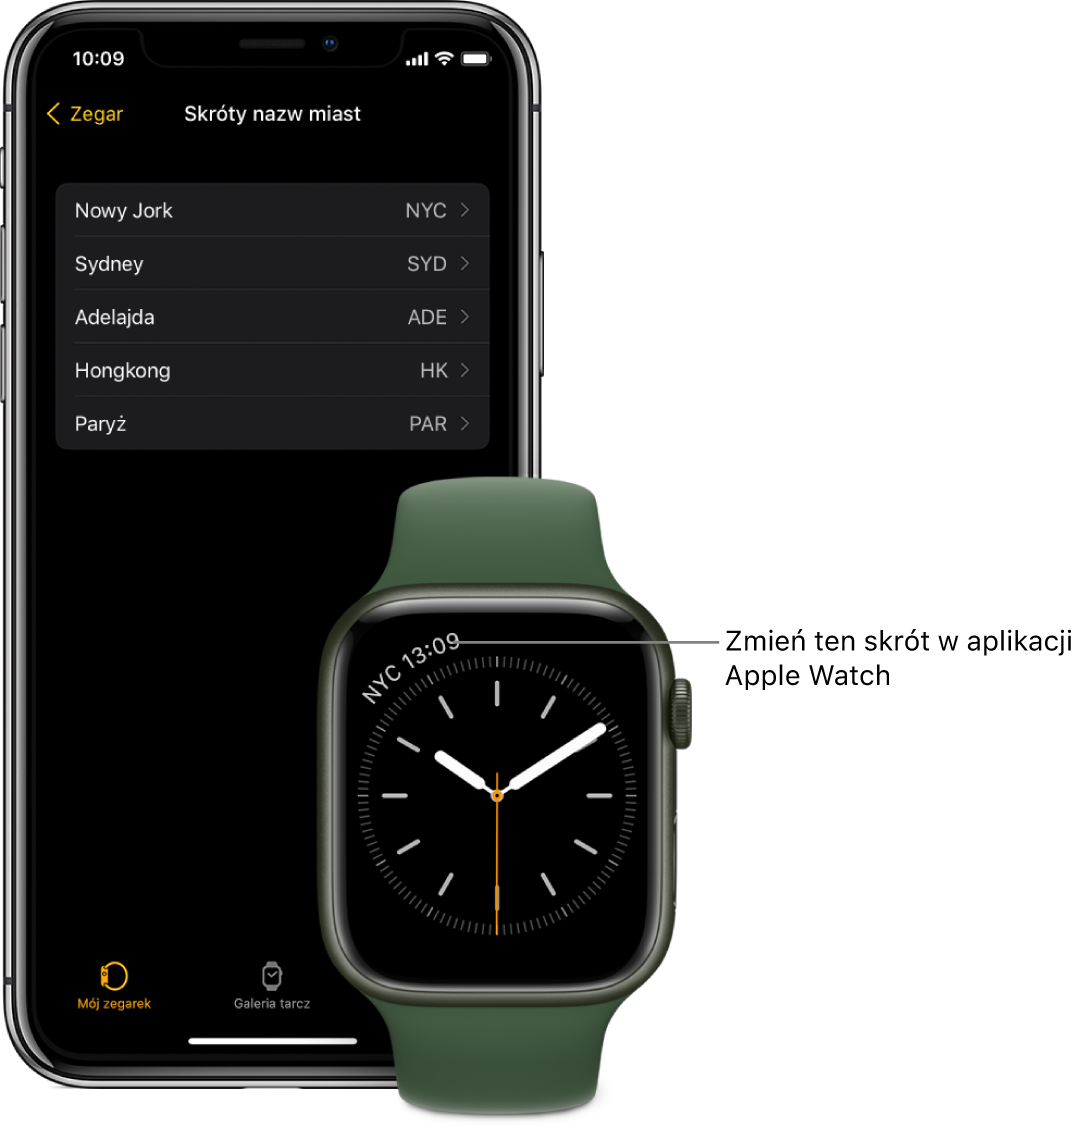 iPhone oraz Apple Watch. Apple Watch wyświetla godzinę w Nowym Jorku, oznaczonym skrótem NYC. Na ekranie iPhone’a widoczna jest lista miast pod etykietą Skróty nazw miast, znajdującą się w ustawieniach zegara w aplikacji Apple Watch.